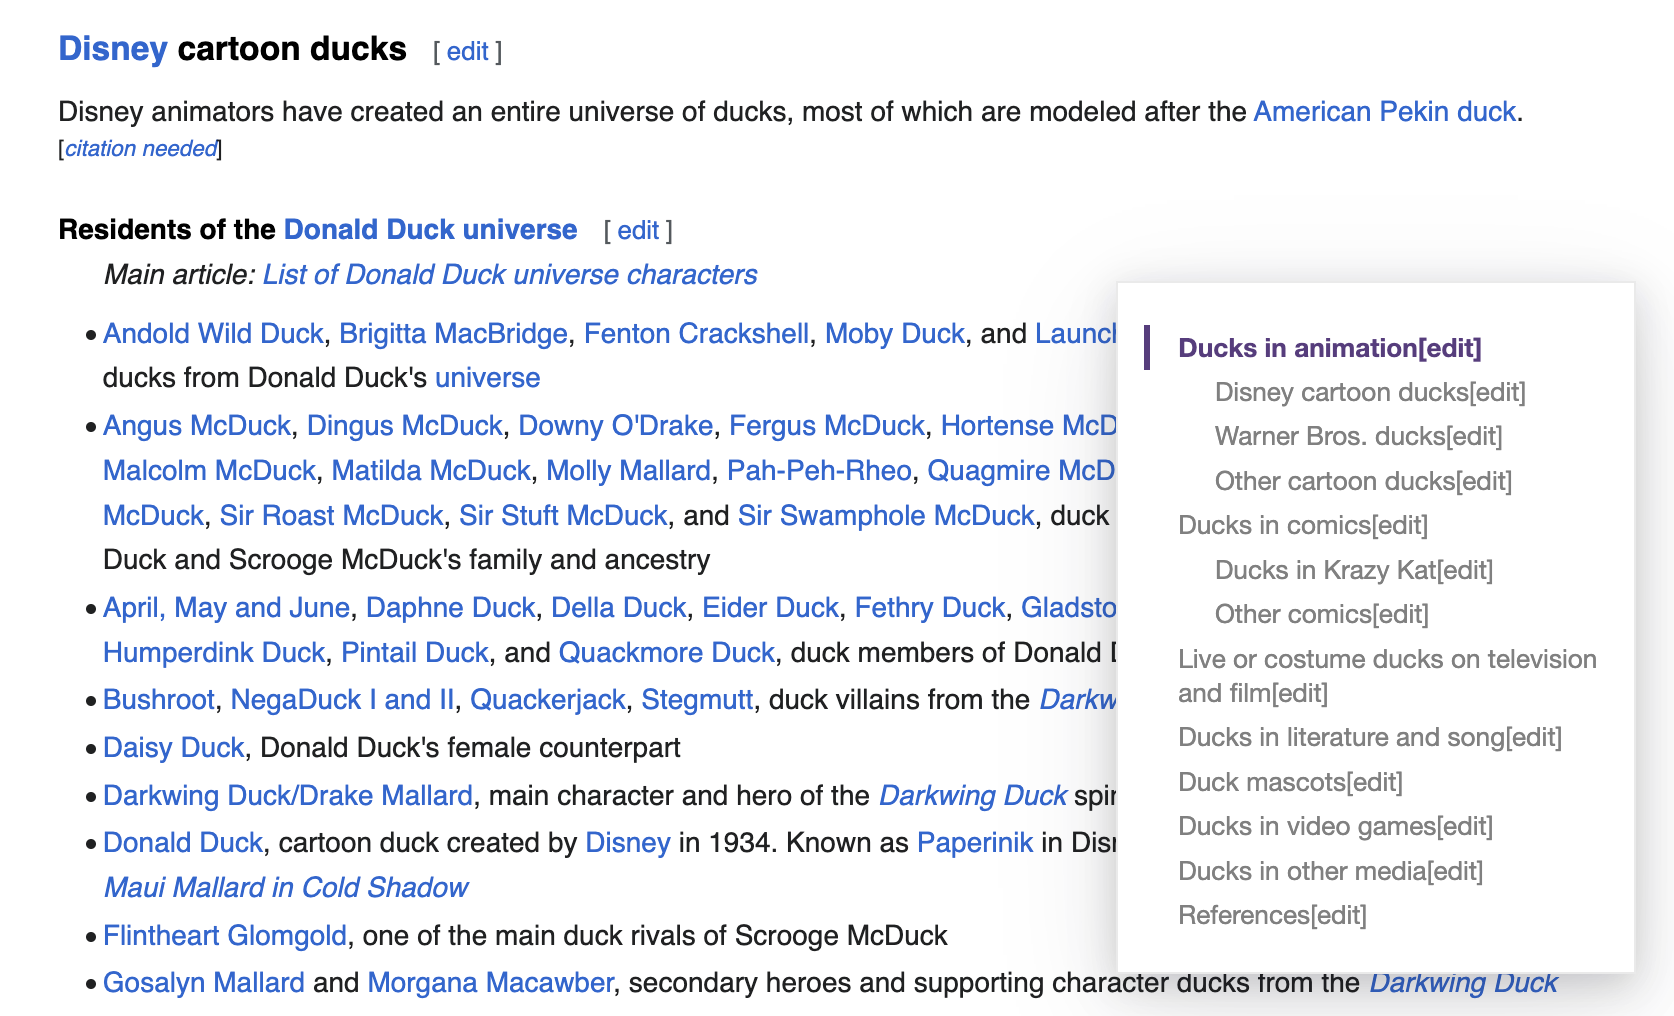 Список вымышленных уток из диснеевской вселенной Дональда Дака из Википедии с оглавлением, созданным расширением браузера Smart TOC.